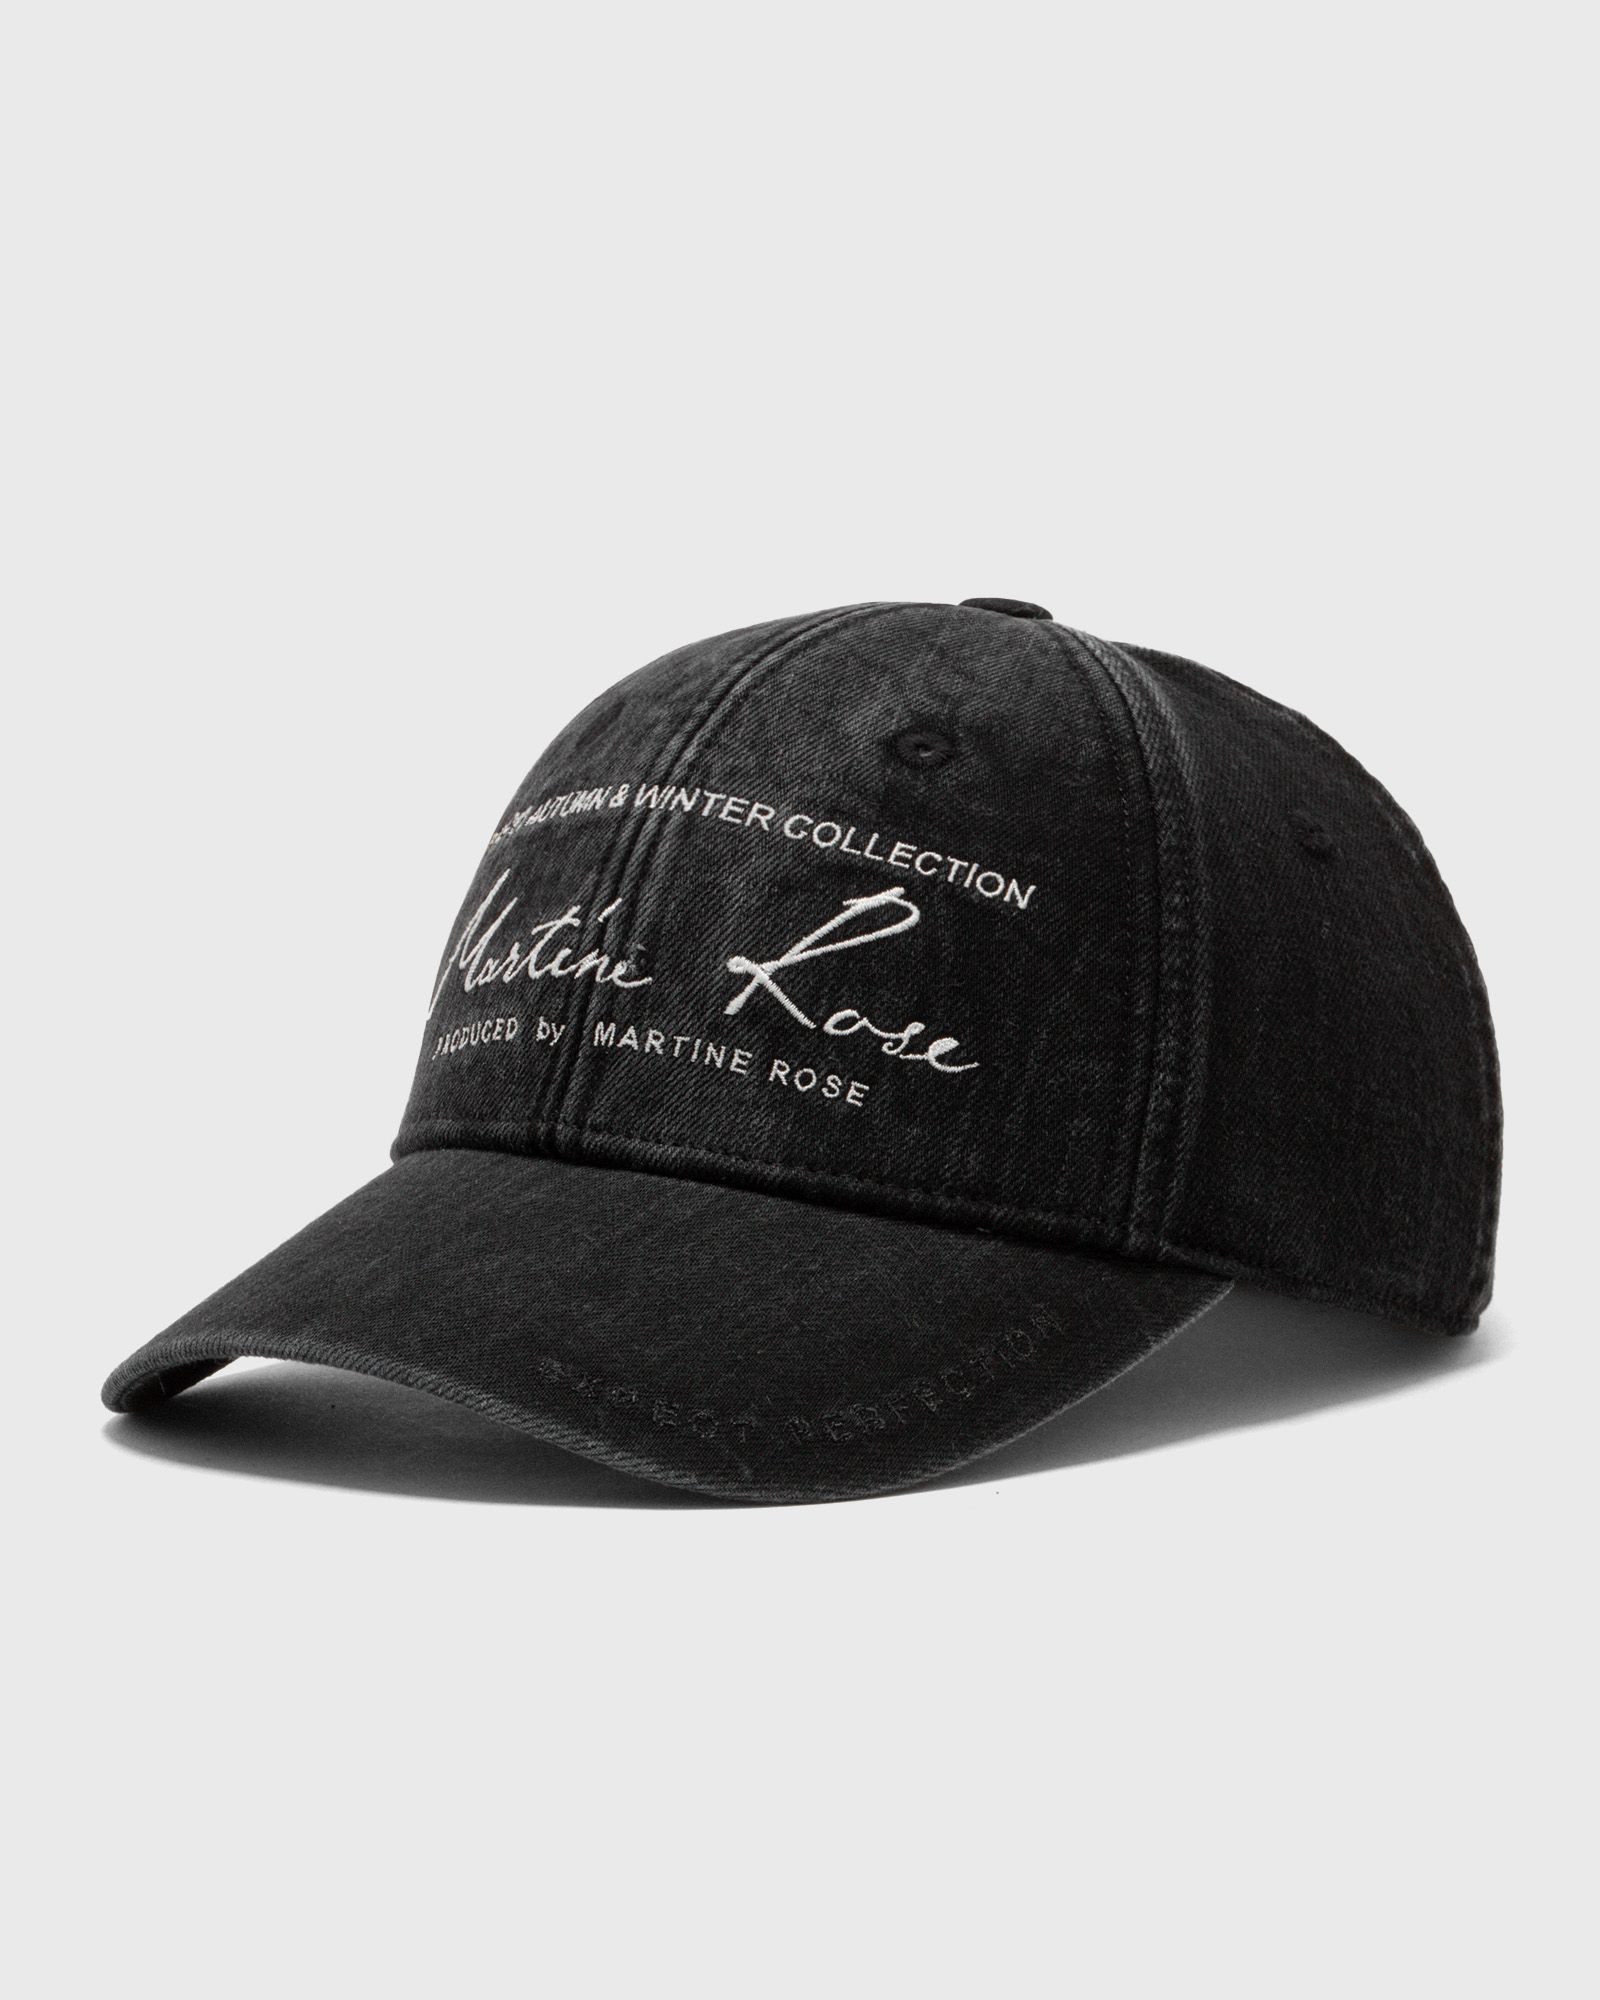 Martine Rose - signature cap men caps black in größe:one size